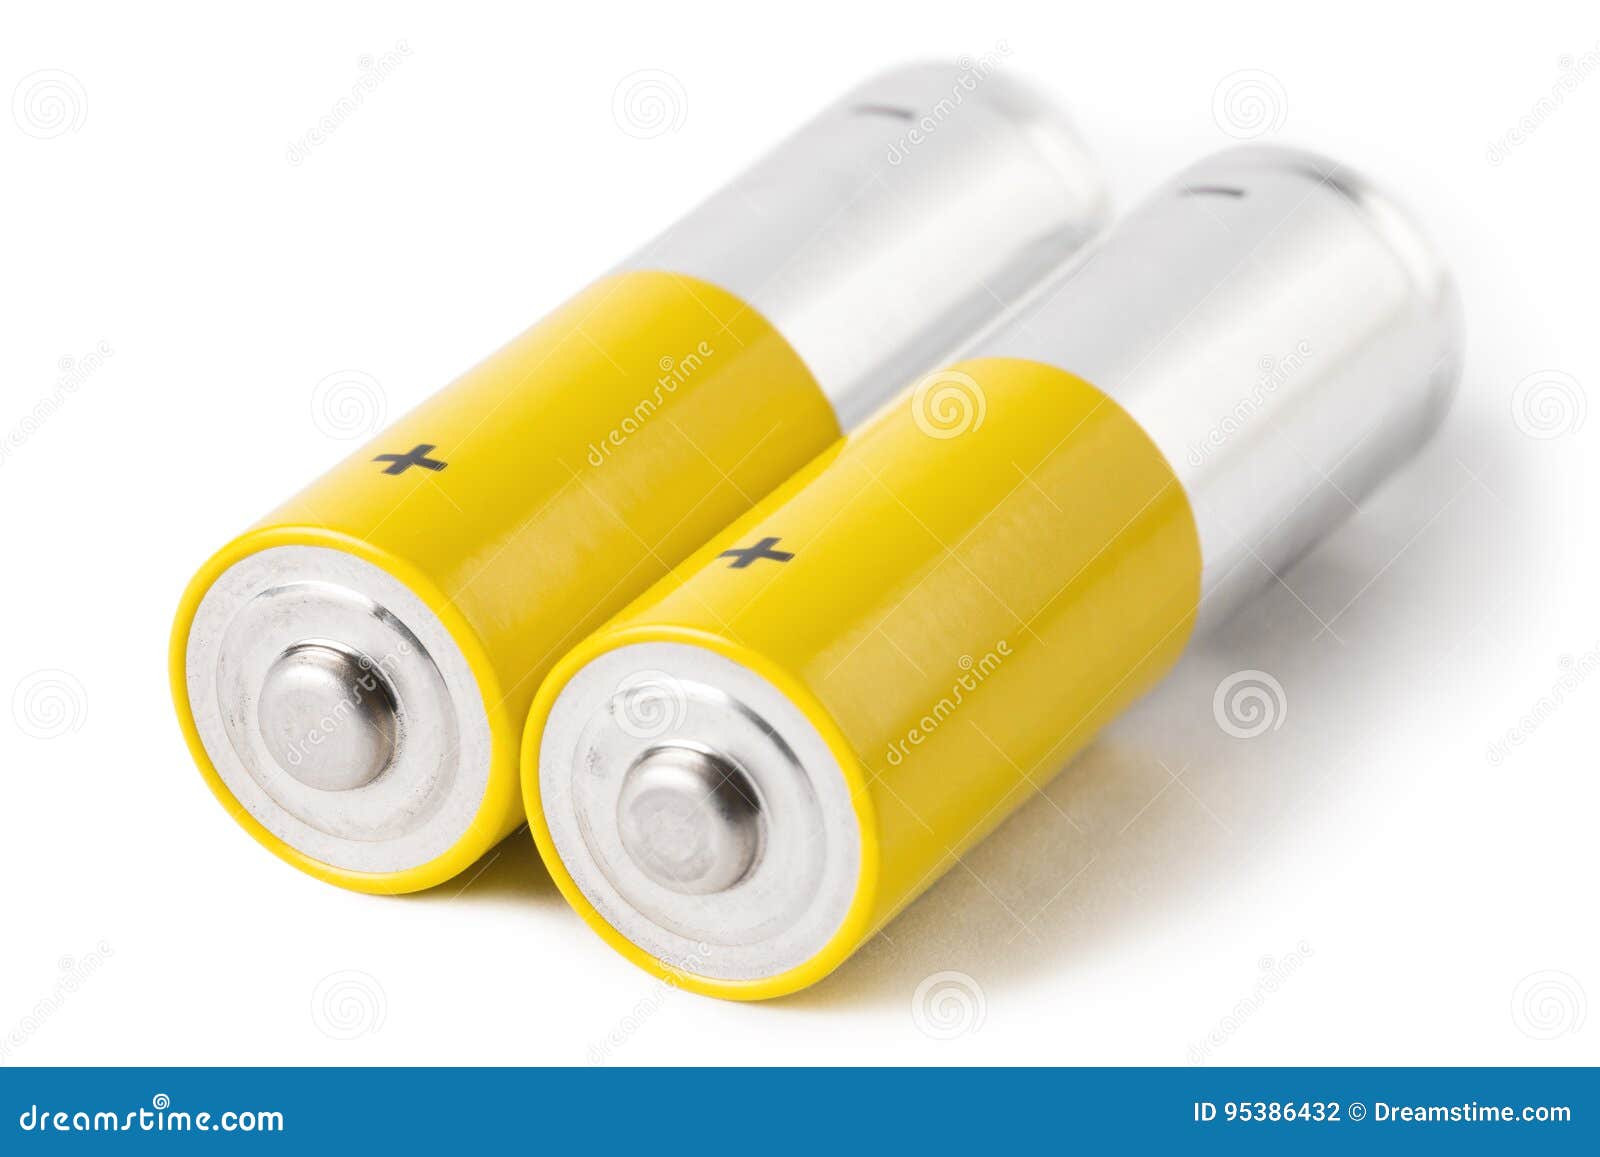 2 батареи AA, изолированной на белой предпосылке Стоковое Фото .